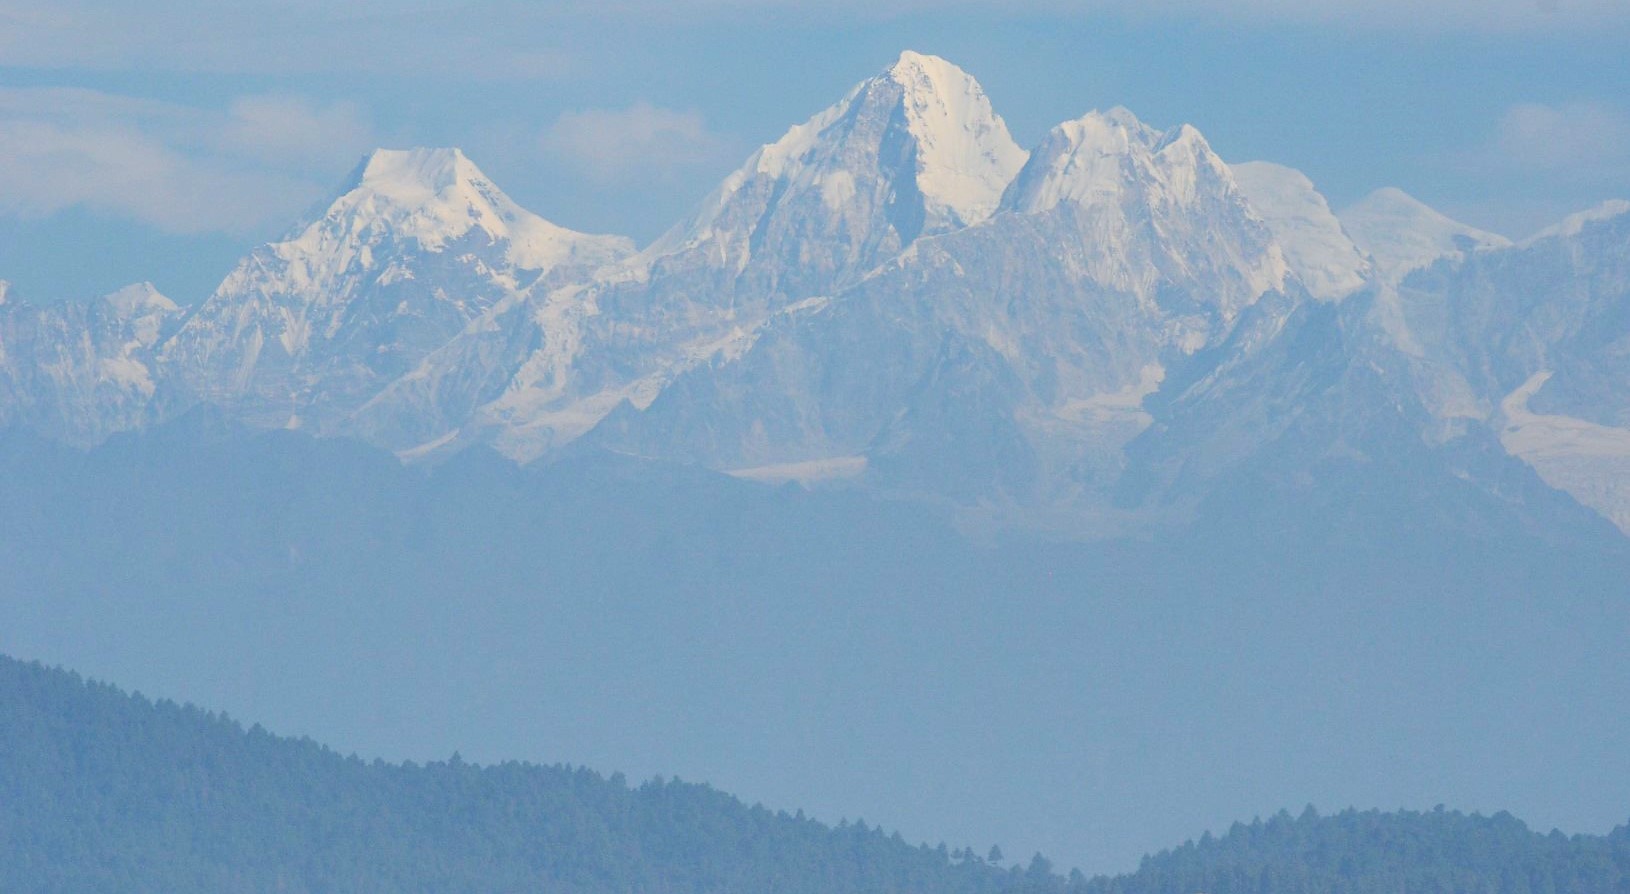 trekking van Panauti naar Sanga, De actieve rondreis Nepal met meerdaagse Himalaya soft trekking